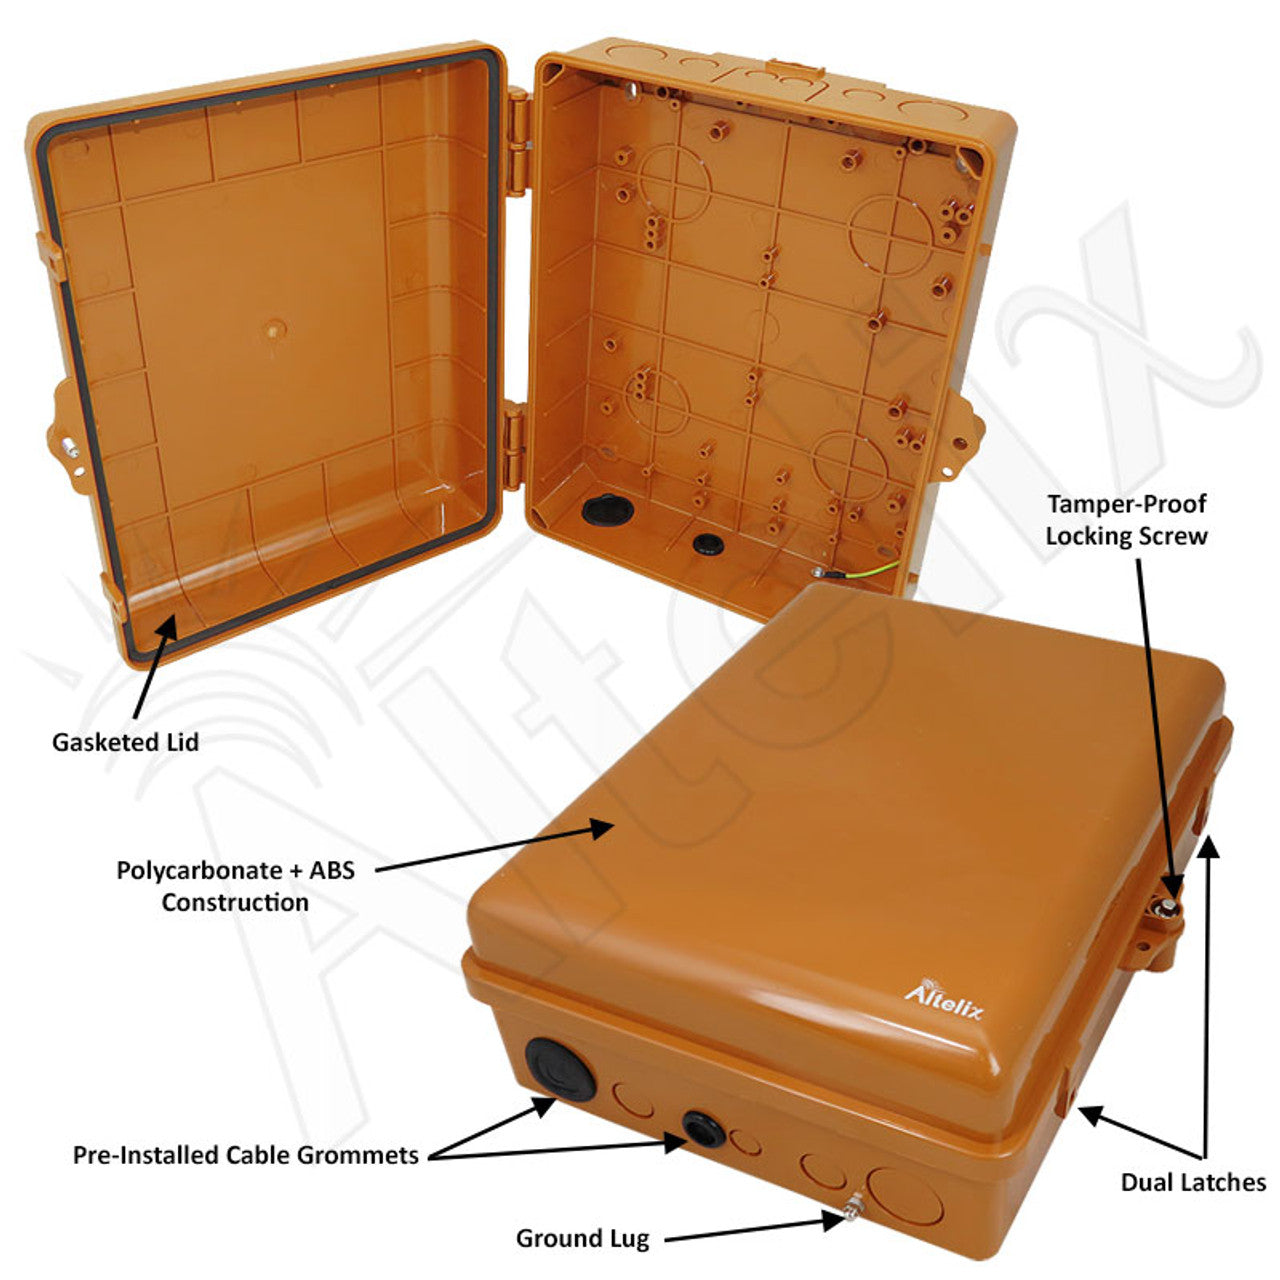 Altelix 14x11x5 Polycarbonate + ABS Weatherproof Utility Box NEMA Enclosure - Copper Mountain - 0